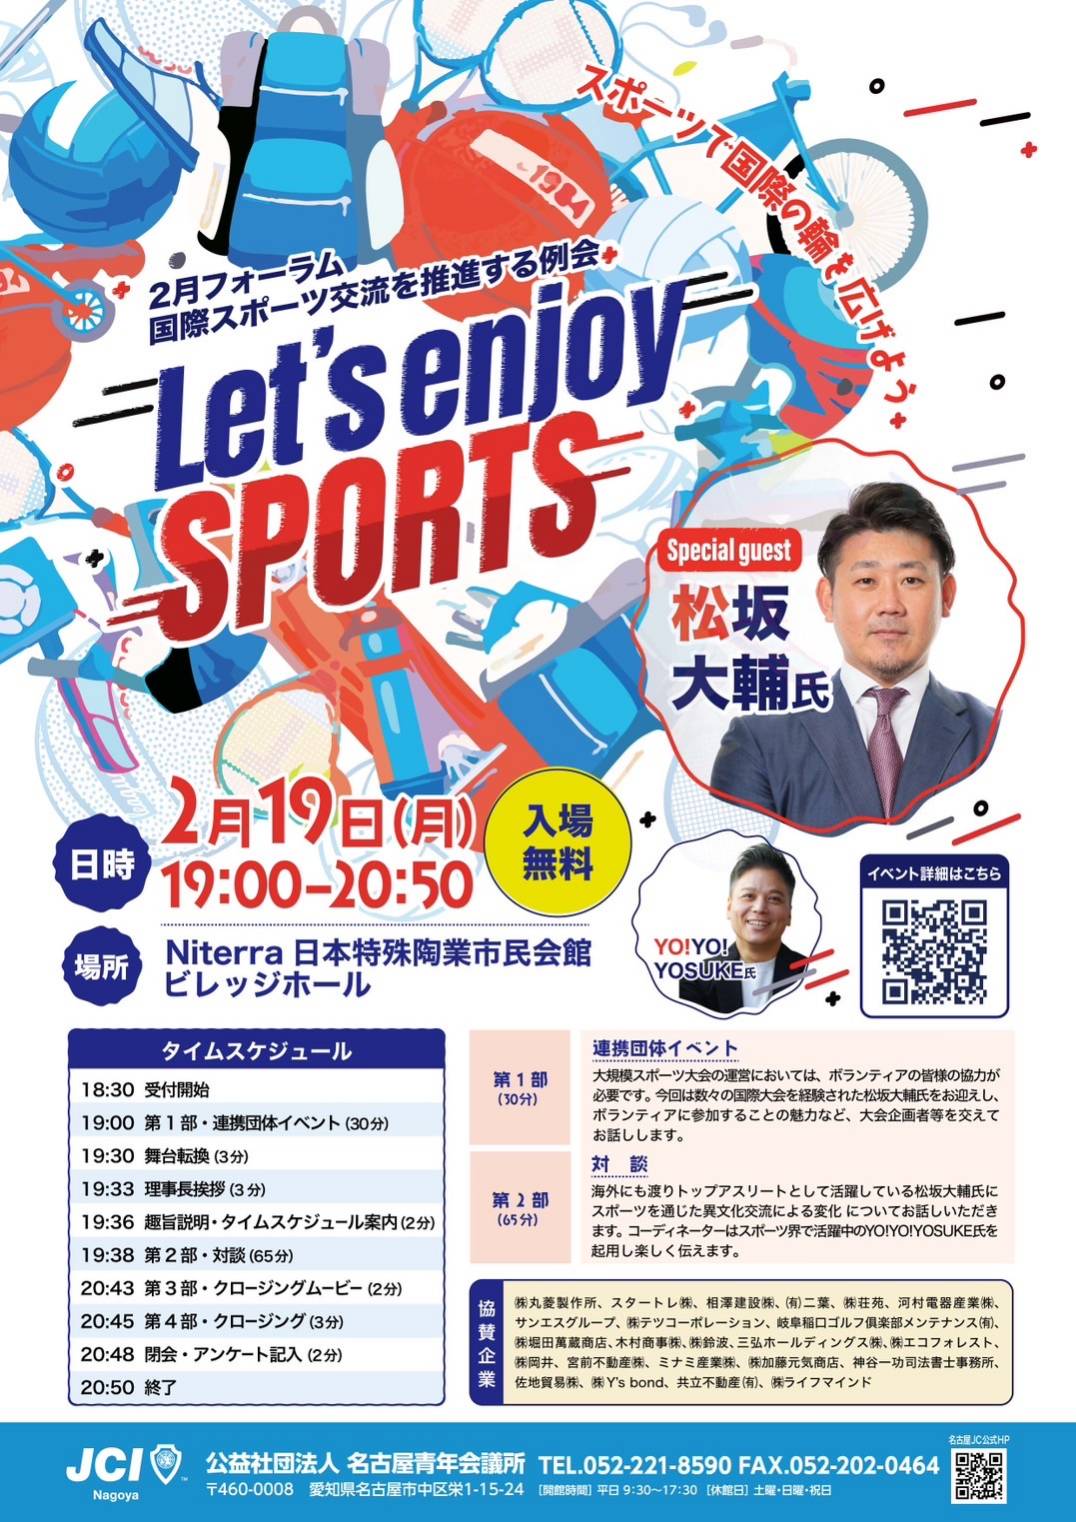 2月例会 Let's enjoy sports～スポーツで国際の輪を広げよう～